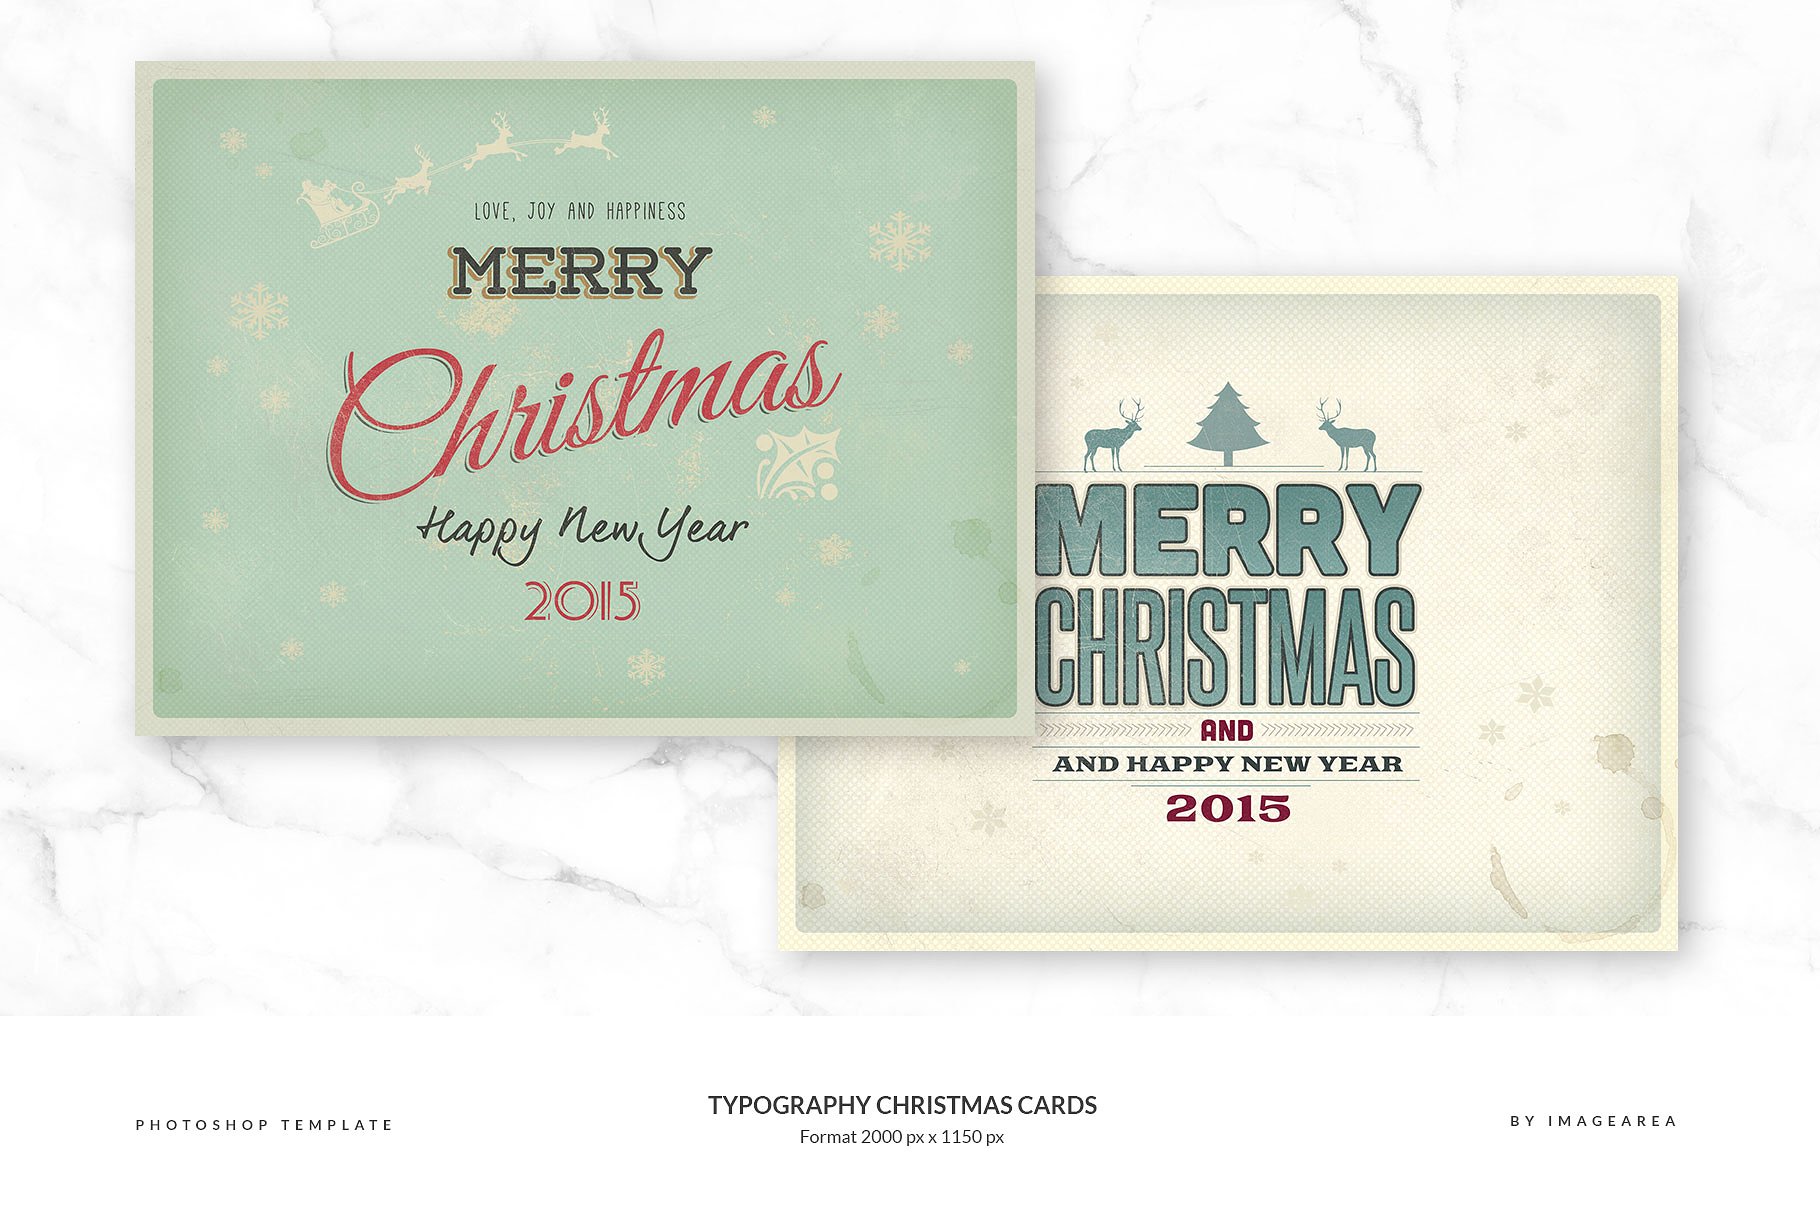 古典风格圣诞节活动贺卡模板 Typography Christmas Cards插图(1)